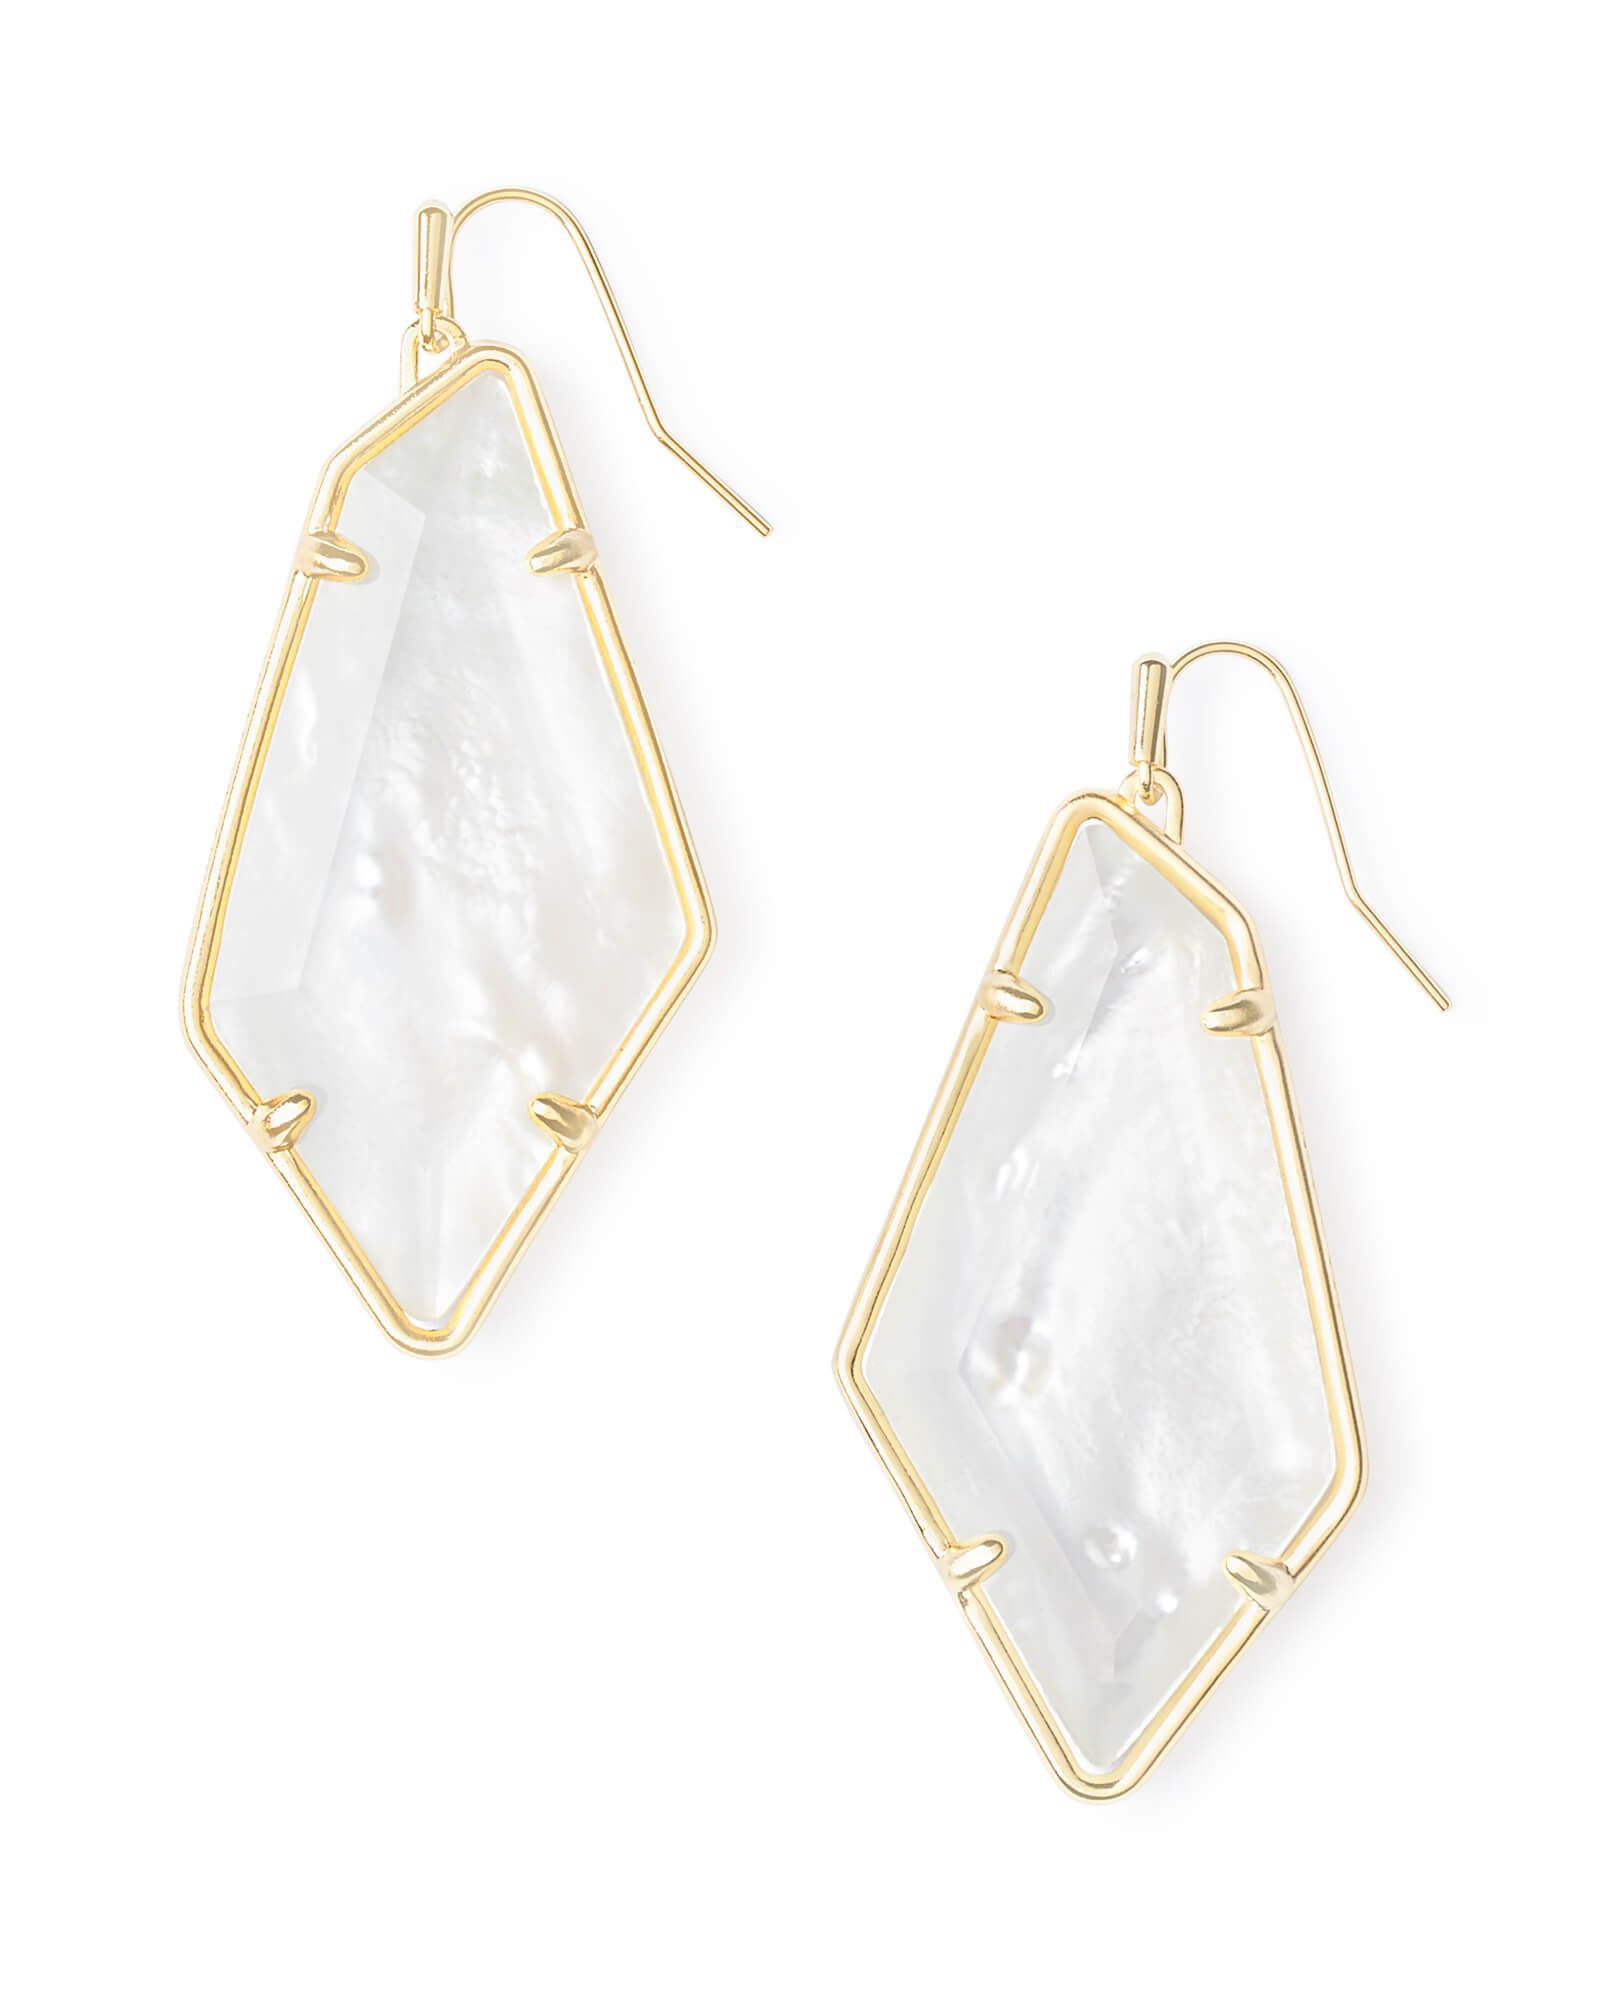 Emilia Gold Drop Earrings in Ivory Mother-of-Pearl | Kendra Scott | Kendra Scott